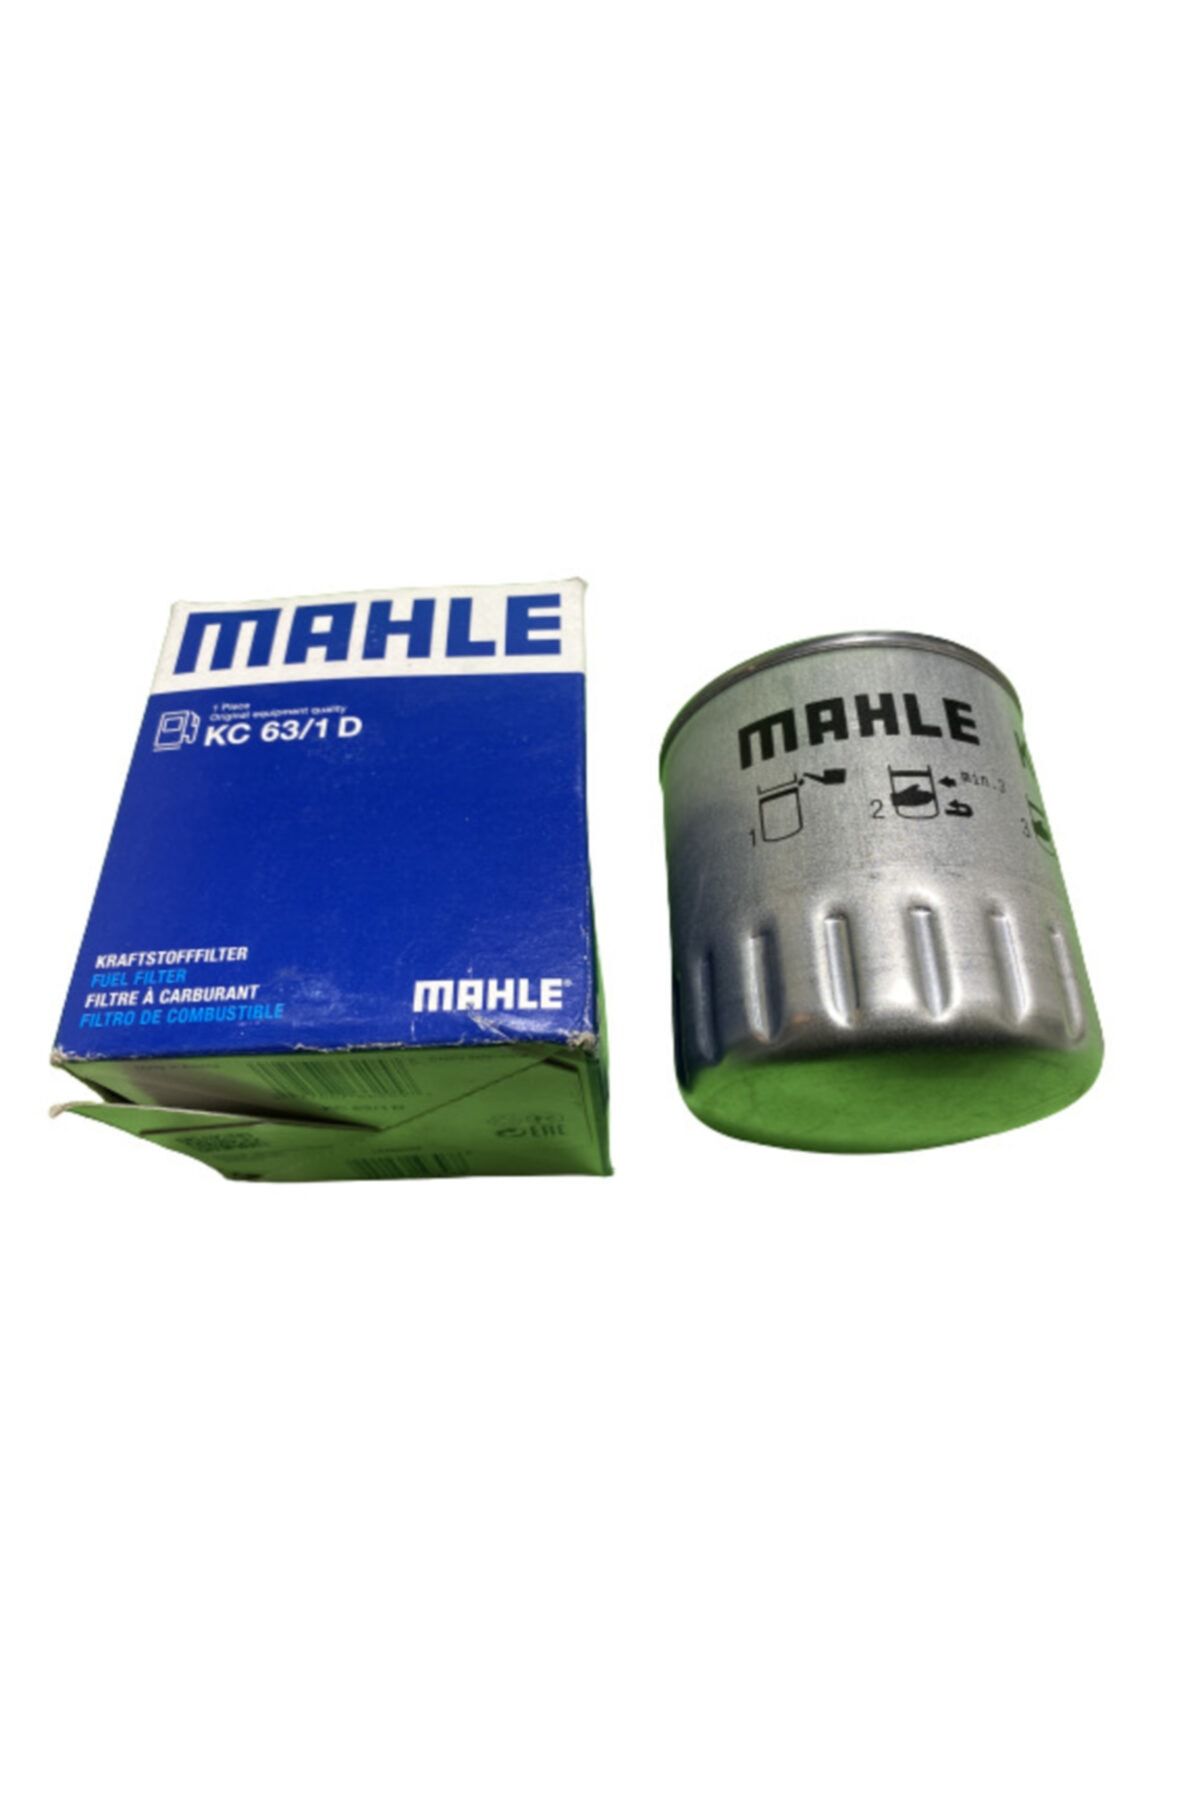 Mahle Yakıt Filtresi / Sprinter - Vito / 6610923101 - Kc63/1 Uyumlu